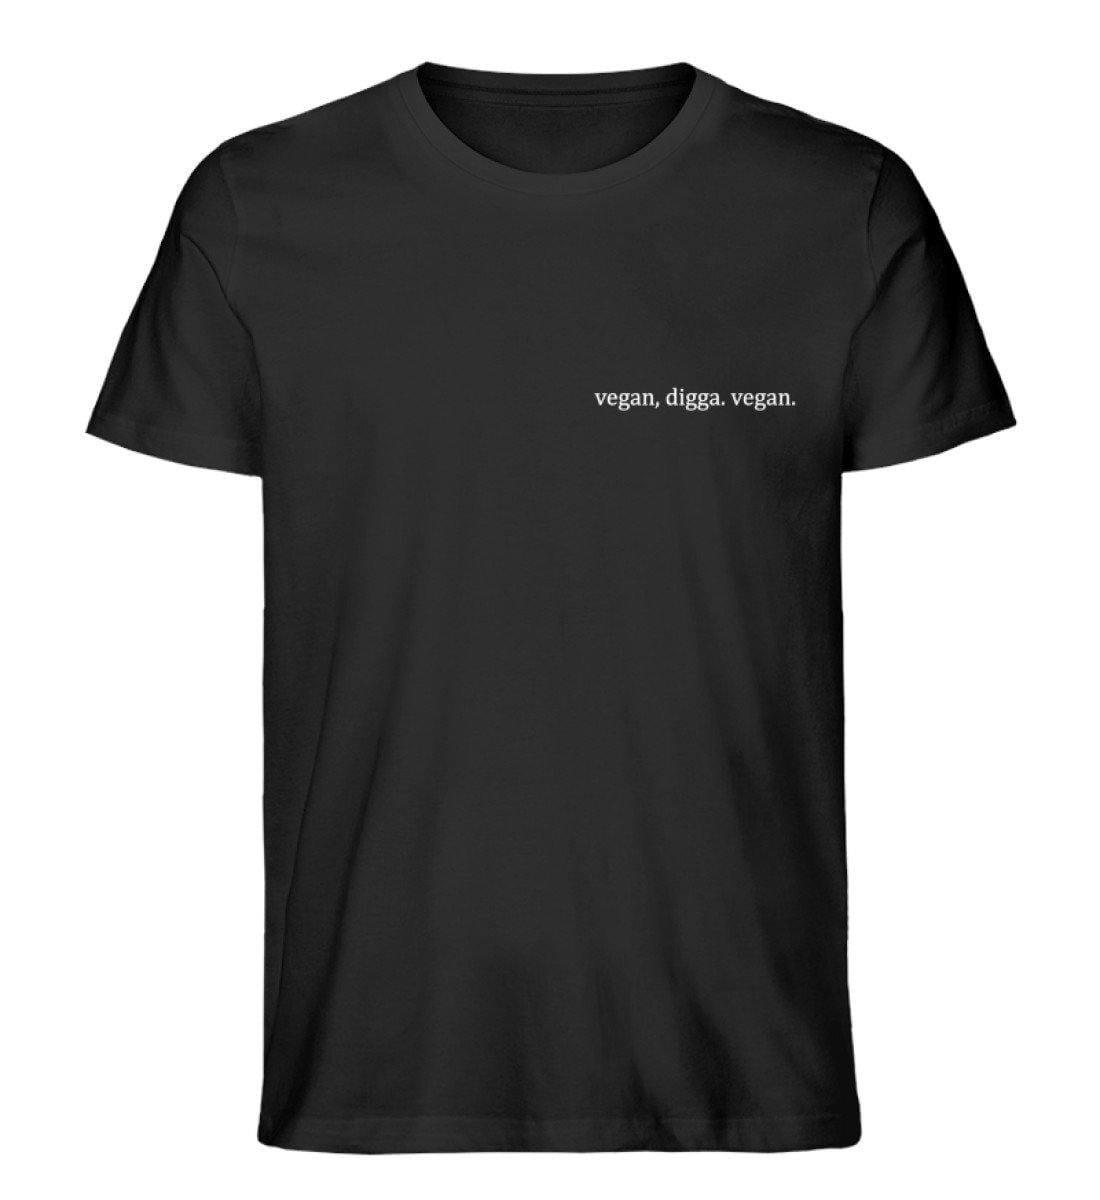 vegan, digga. vegan. - Unisex Organic Shirt - Team Vegan © vegan t shirt